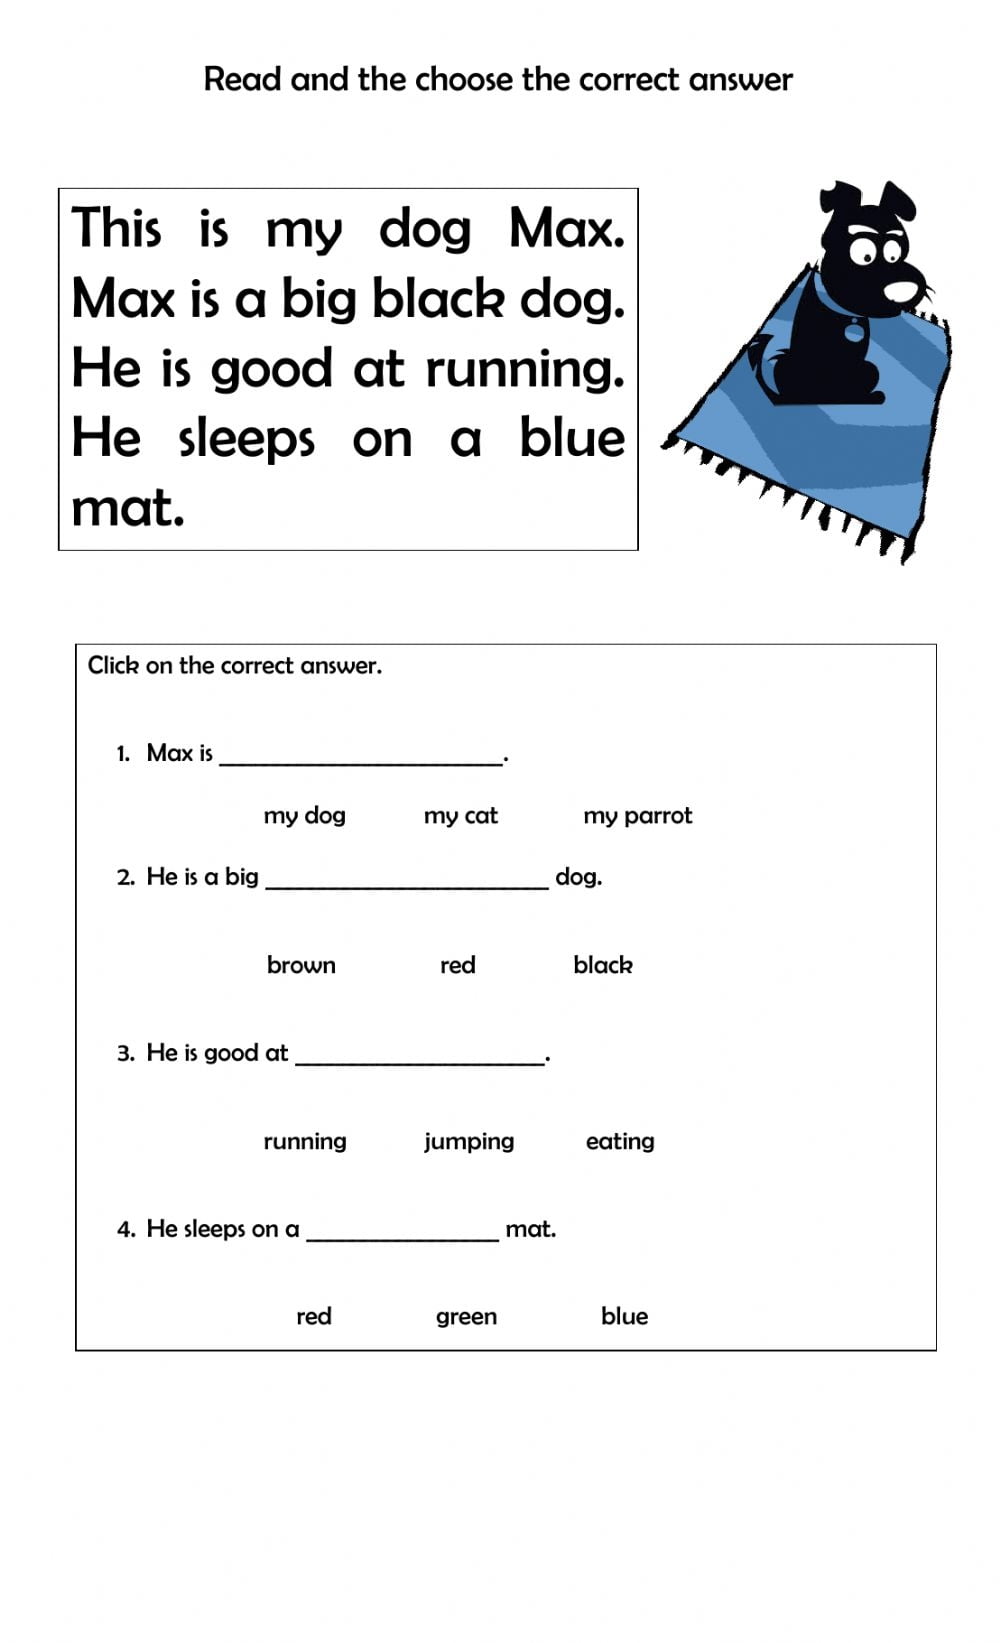 Reading Comprehension Worksheets 1st Grade